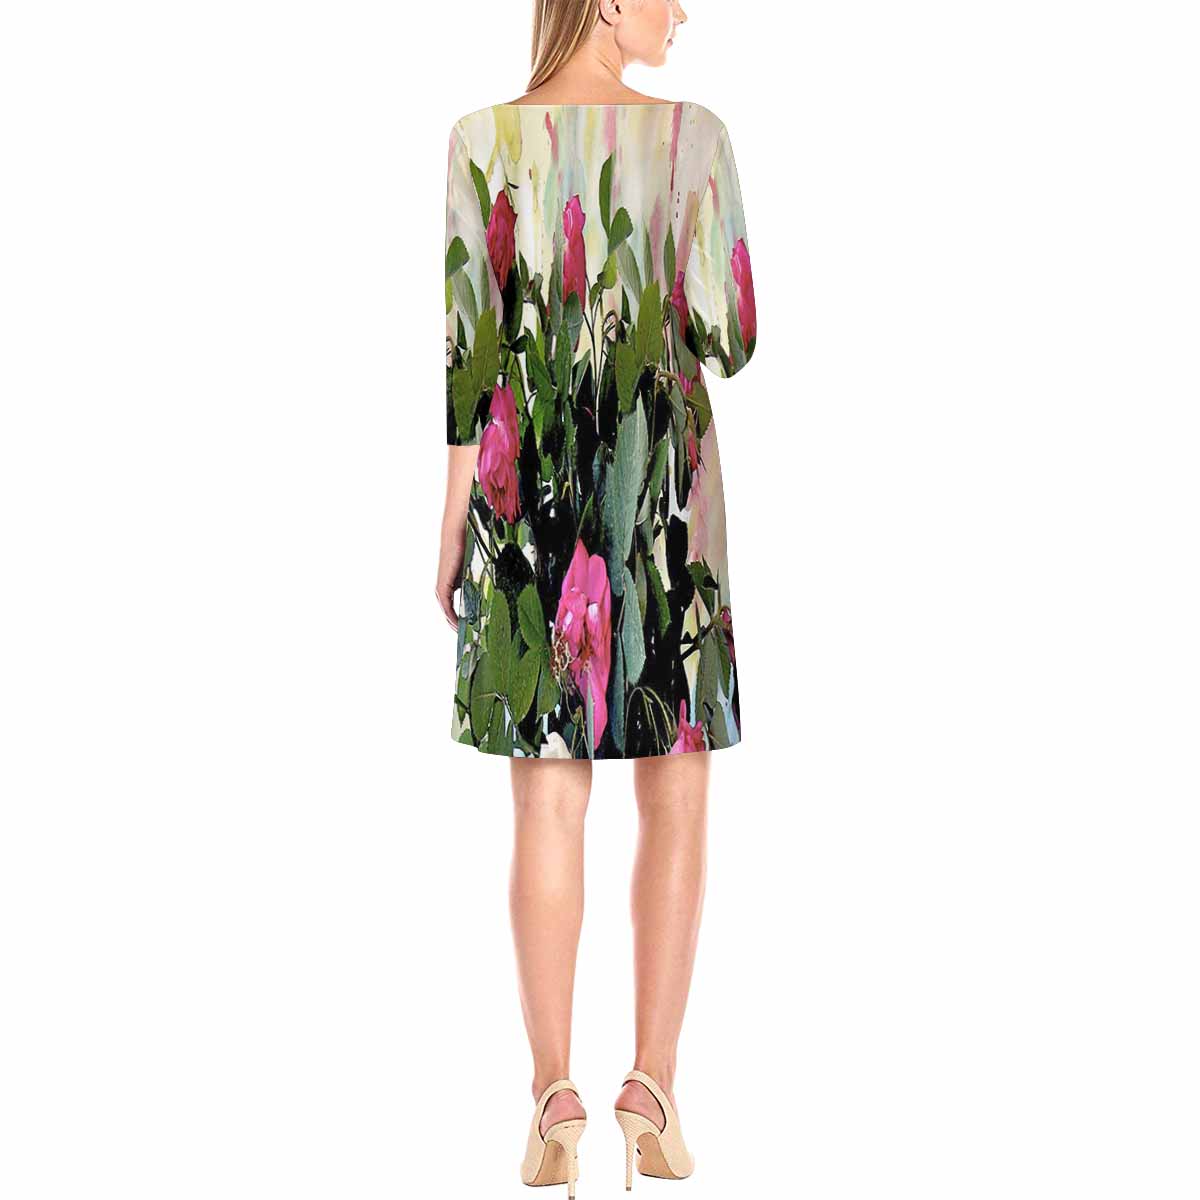 Vintage floral loose dress, model D29532 Design 22